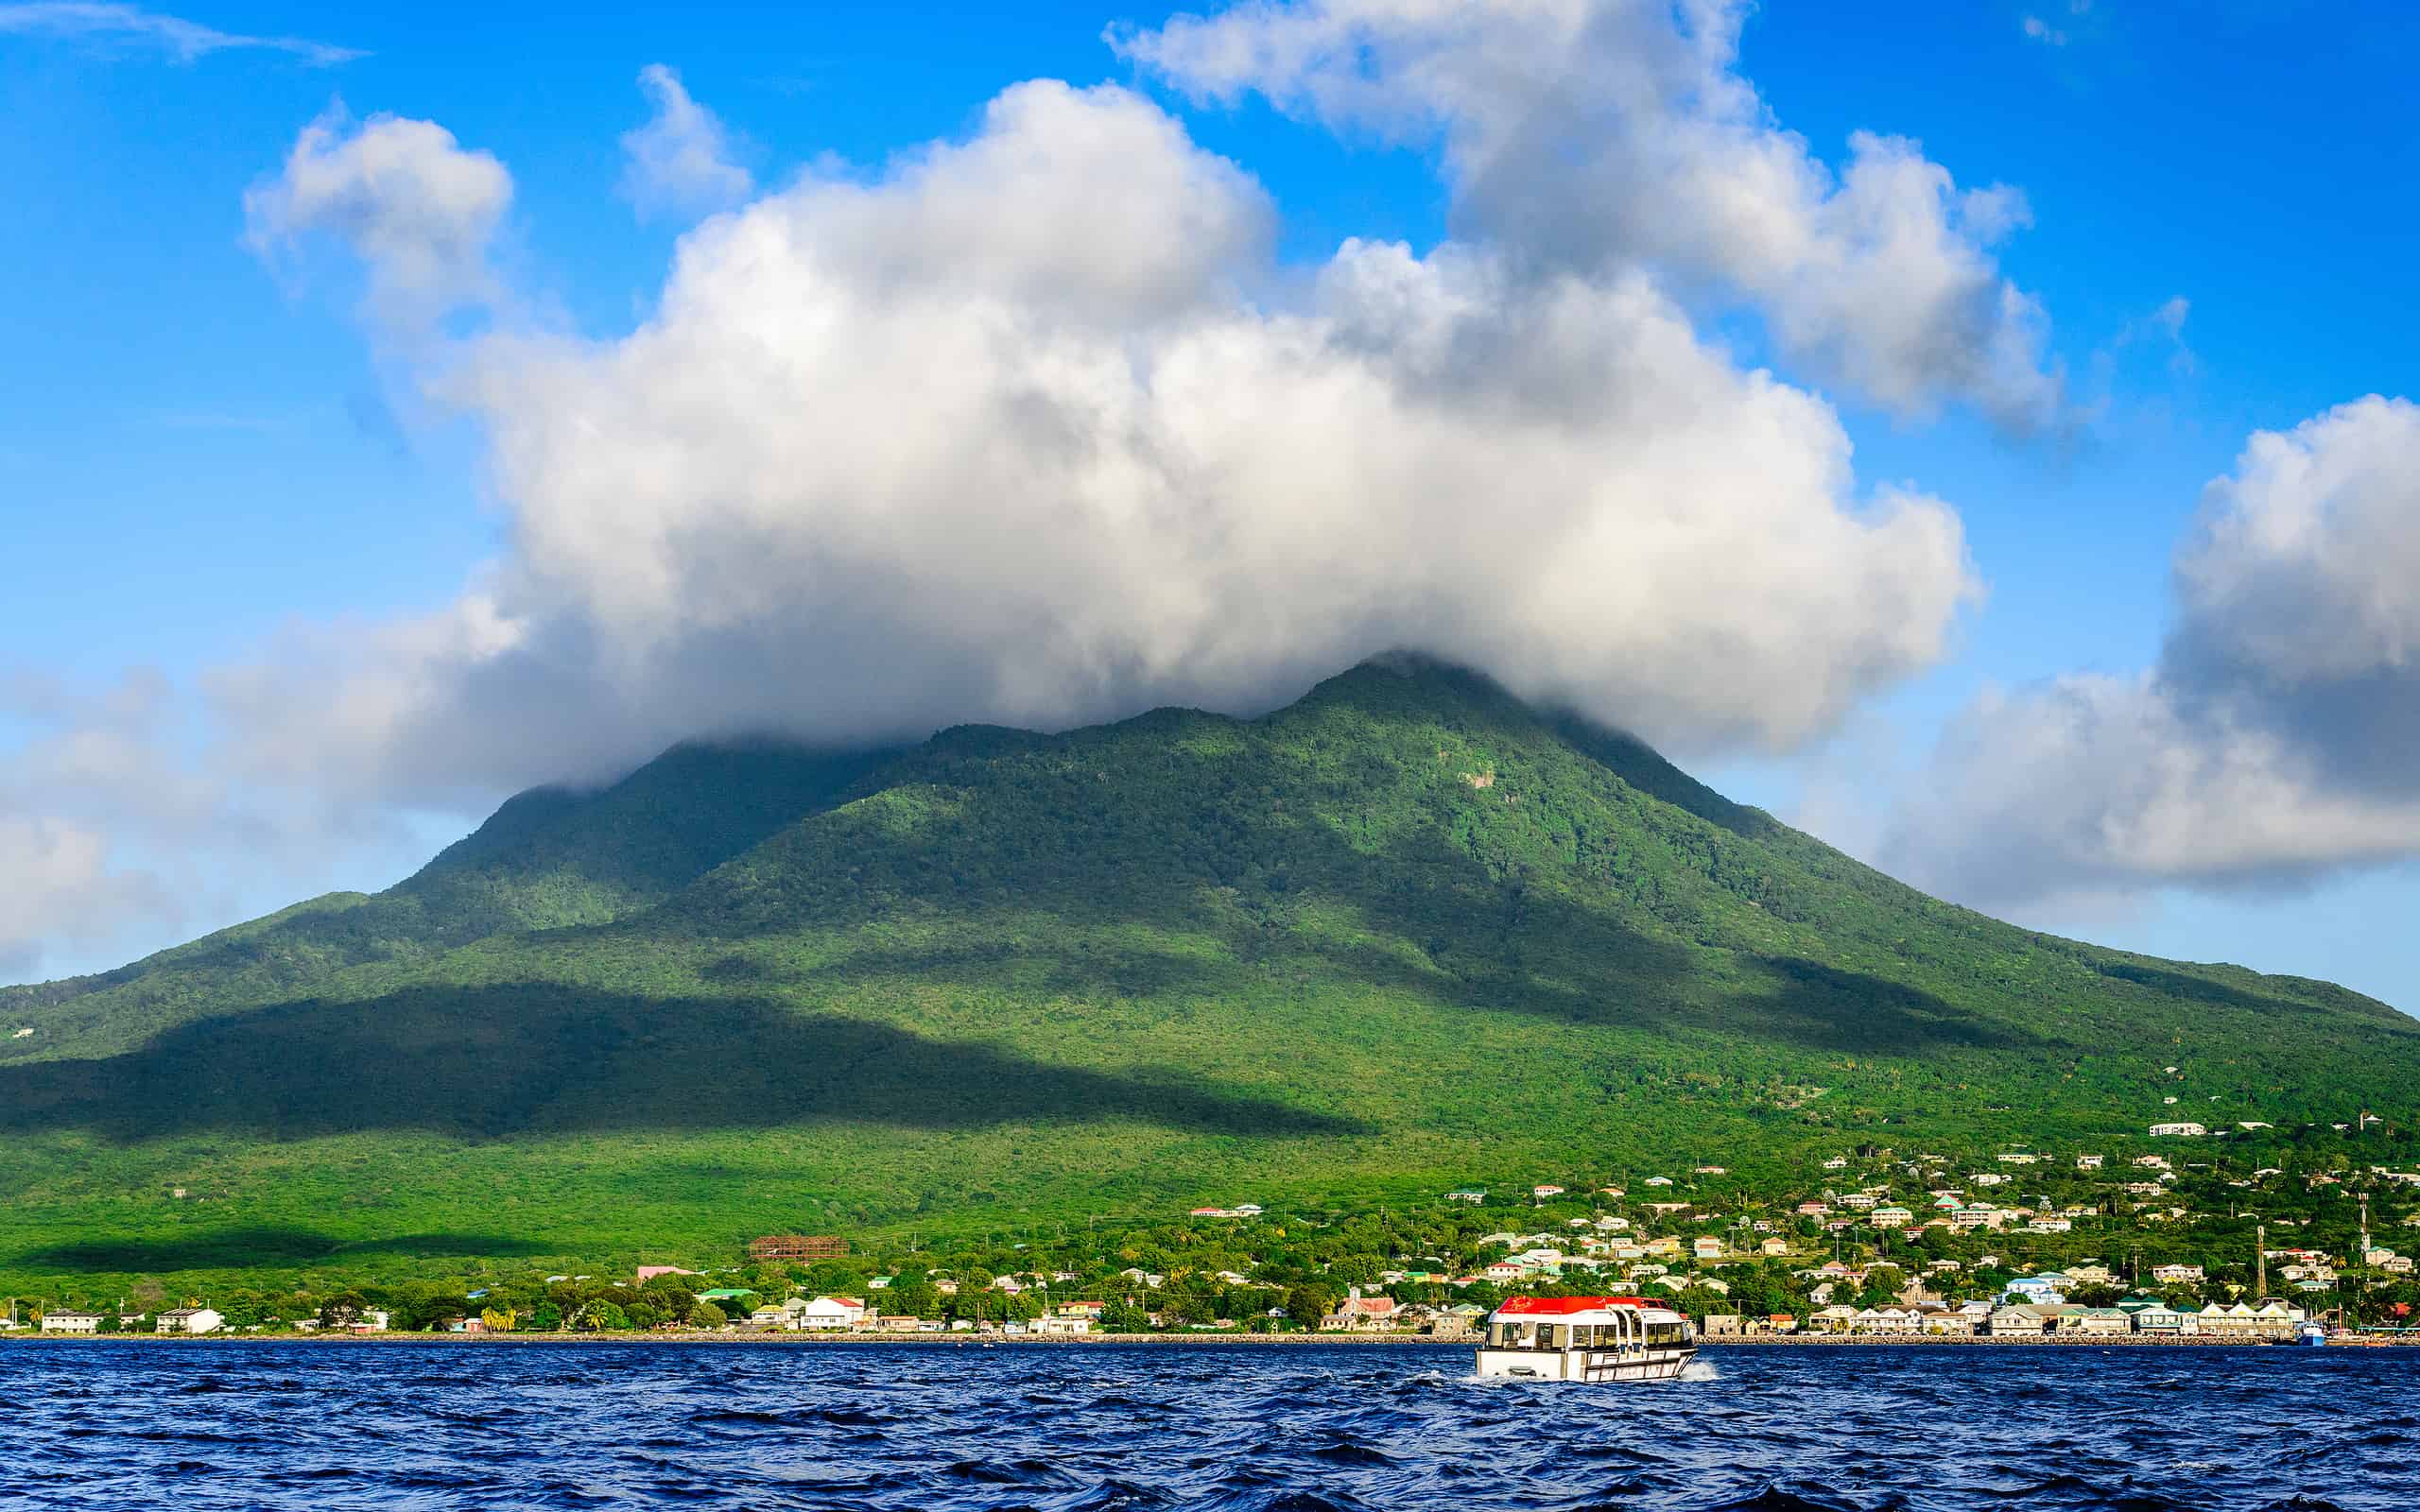 The Nevis Volcano